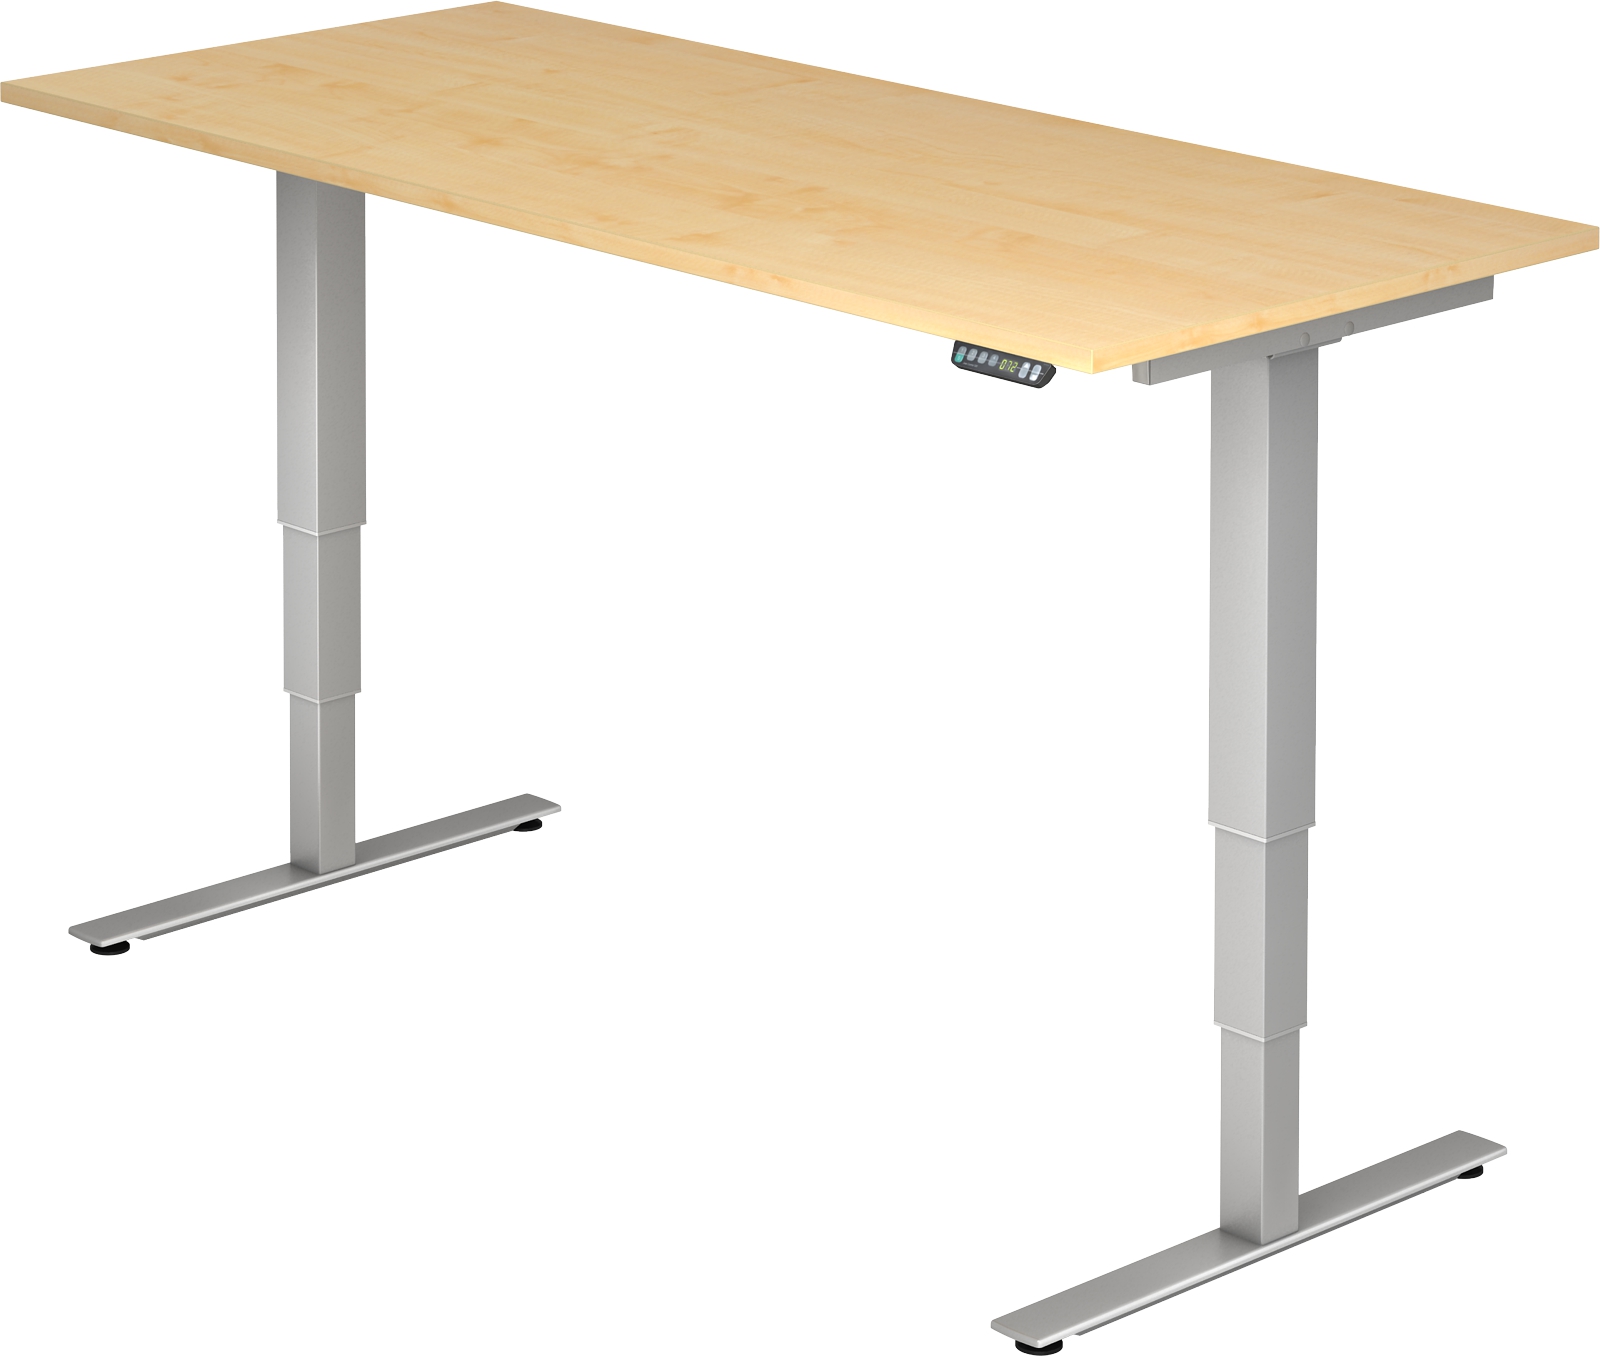 Schreibtisch XDSM19, 180 cm, Ihr günstiger Fuß-Gestell - Büromöbel-Shop T höhenverstellbar, silber elektrisch | Office-Sofort.de